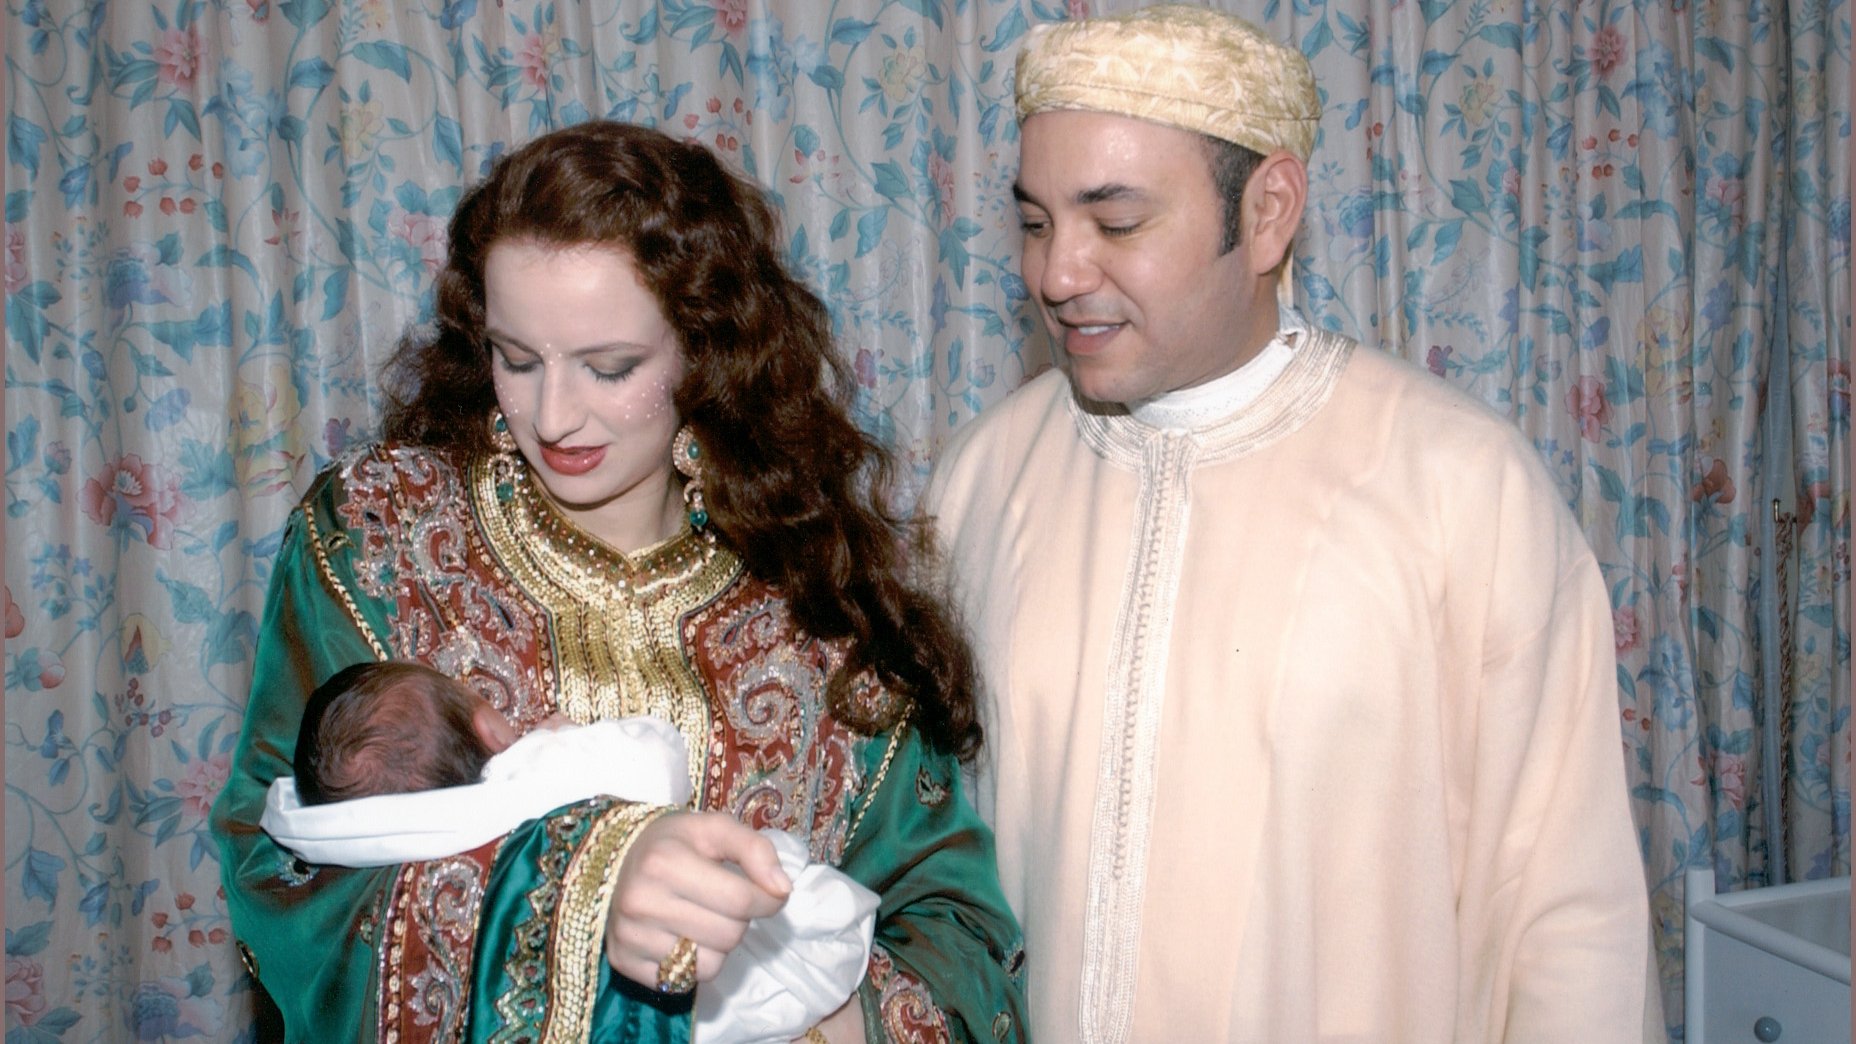 Mai 2003. Les marocains célèbrent la naissance du Prince héritier Moulay El Hassan.
